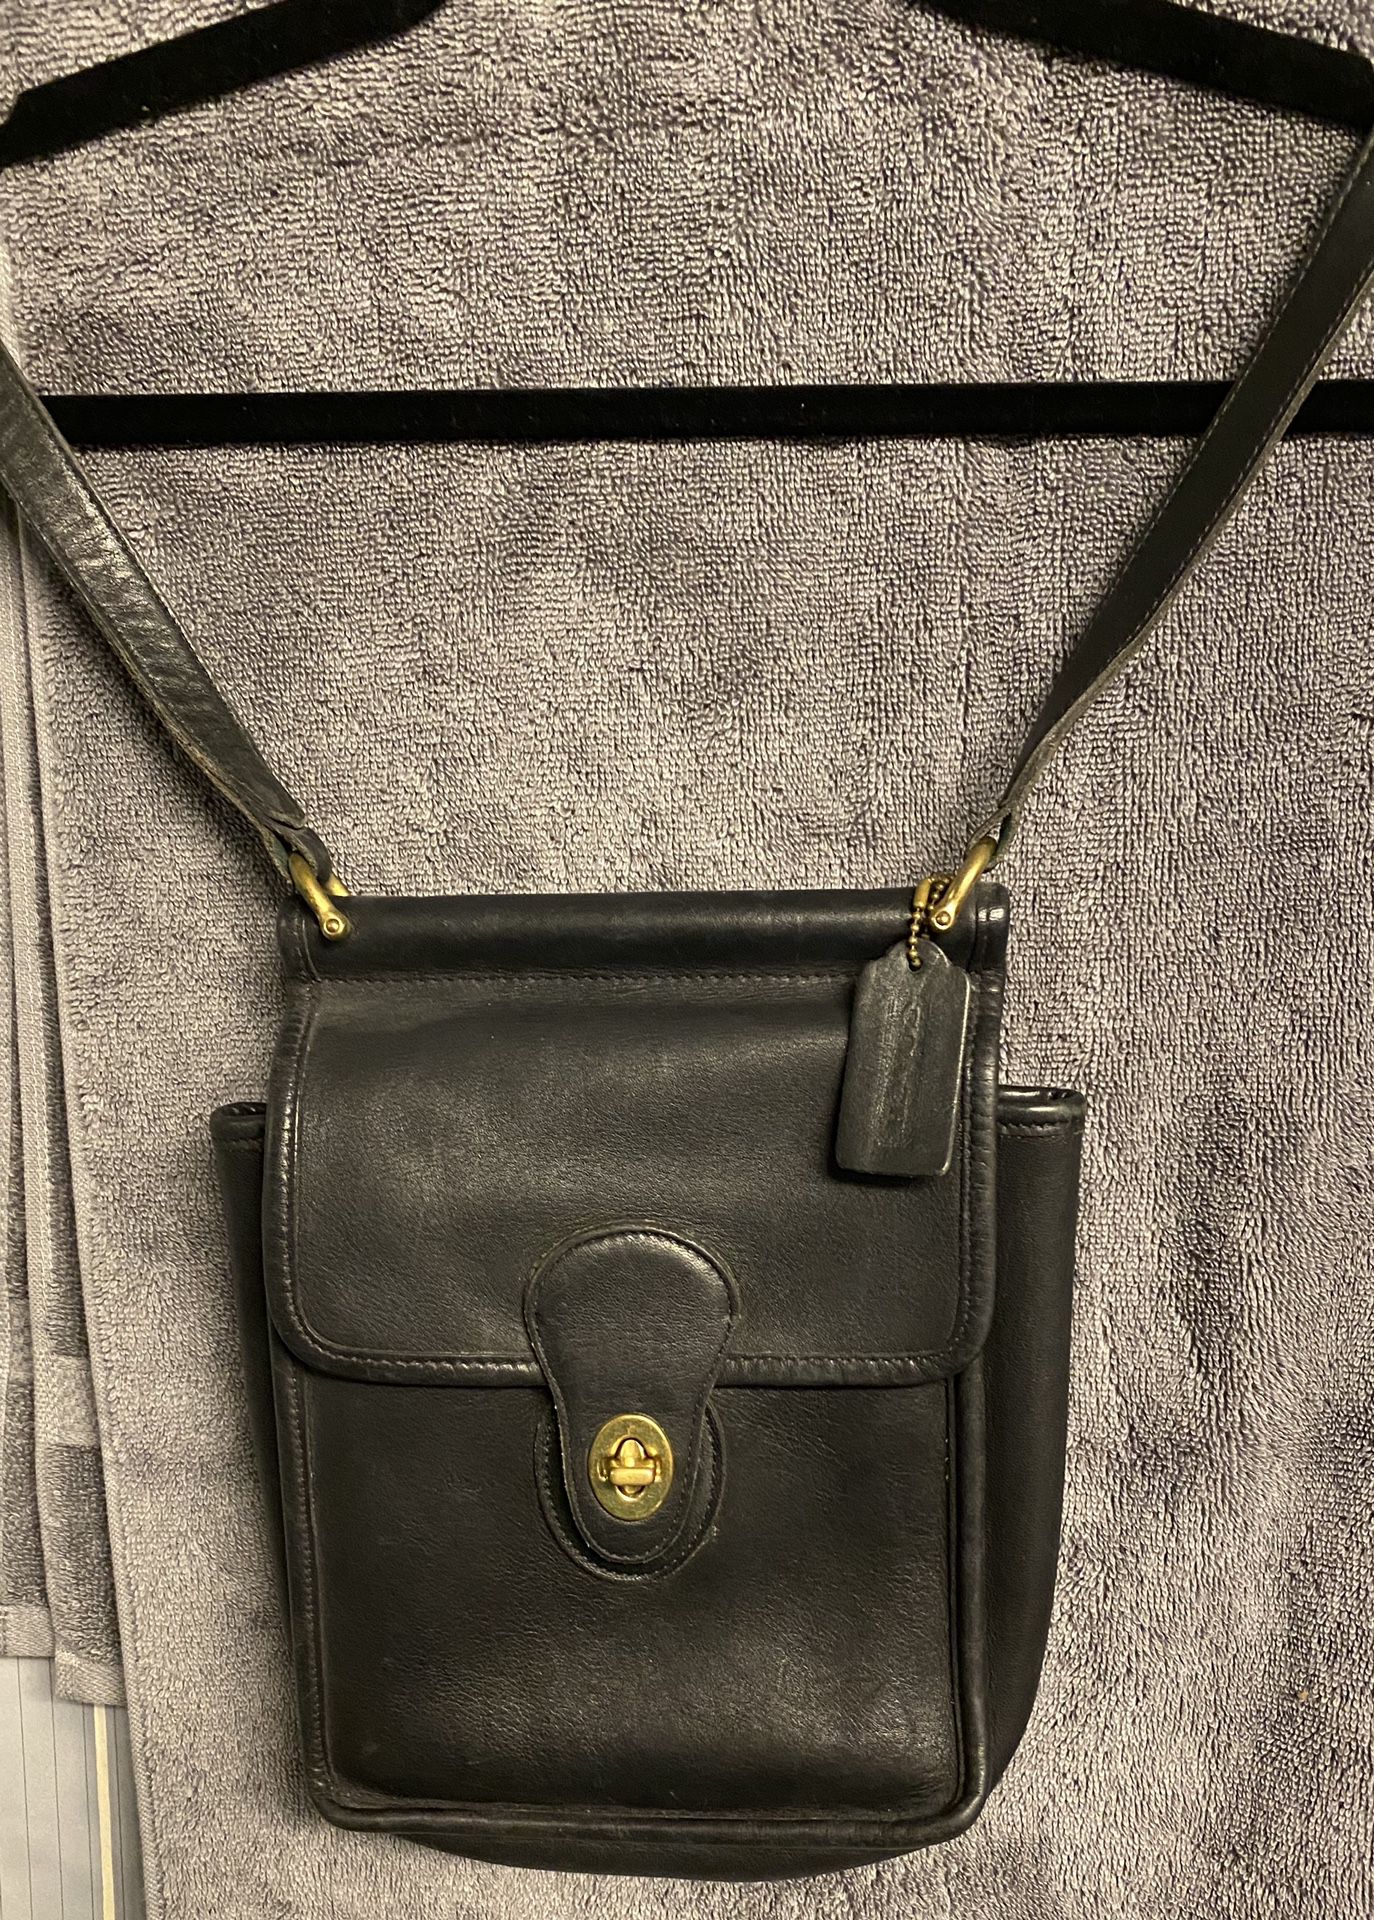 COACH black leather purse